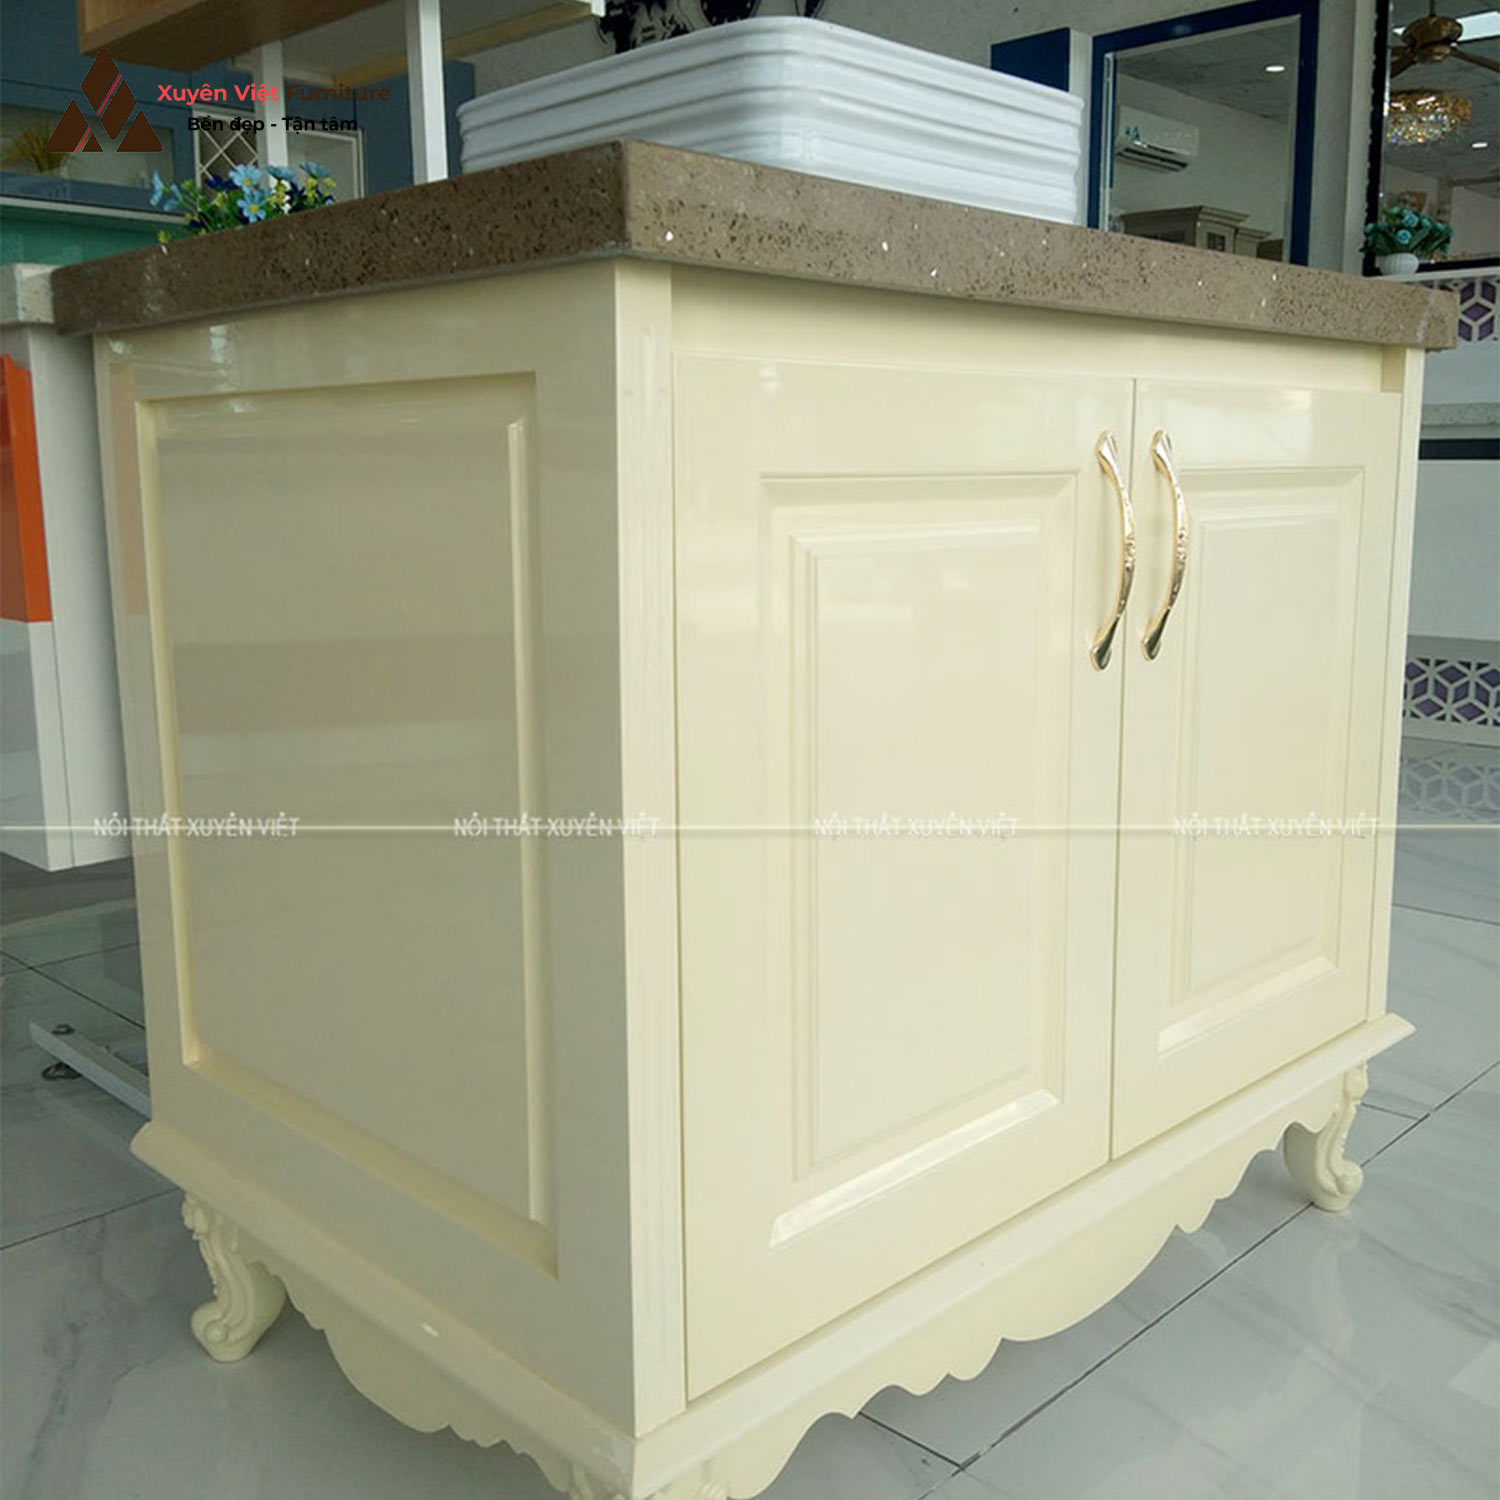 Hình ảnh bộ tủ lavabo tân cổ điển cao cấp LBK1008S bày bán tại Xuyên Việt